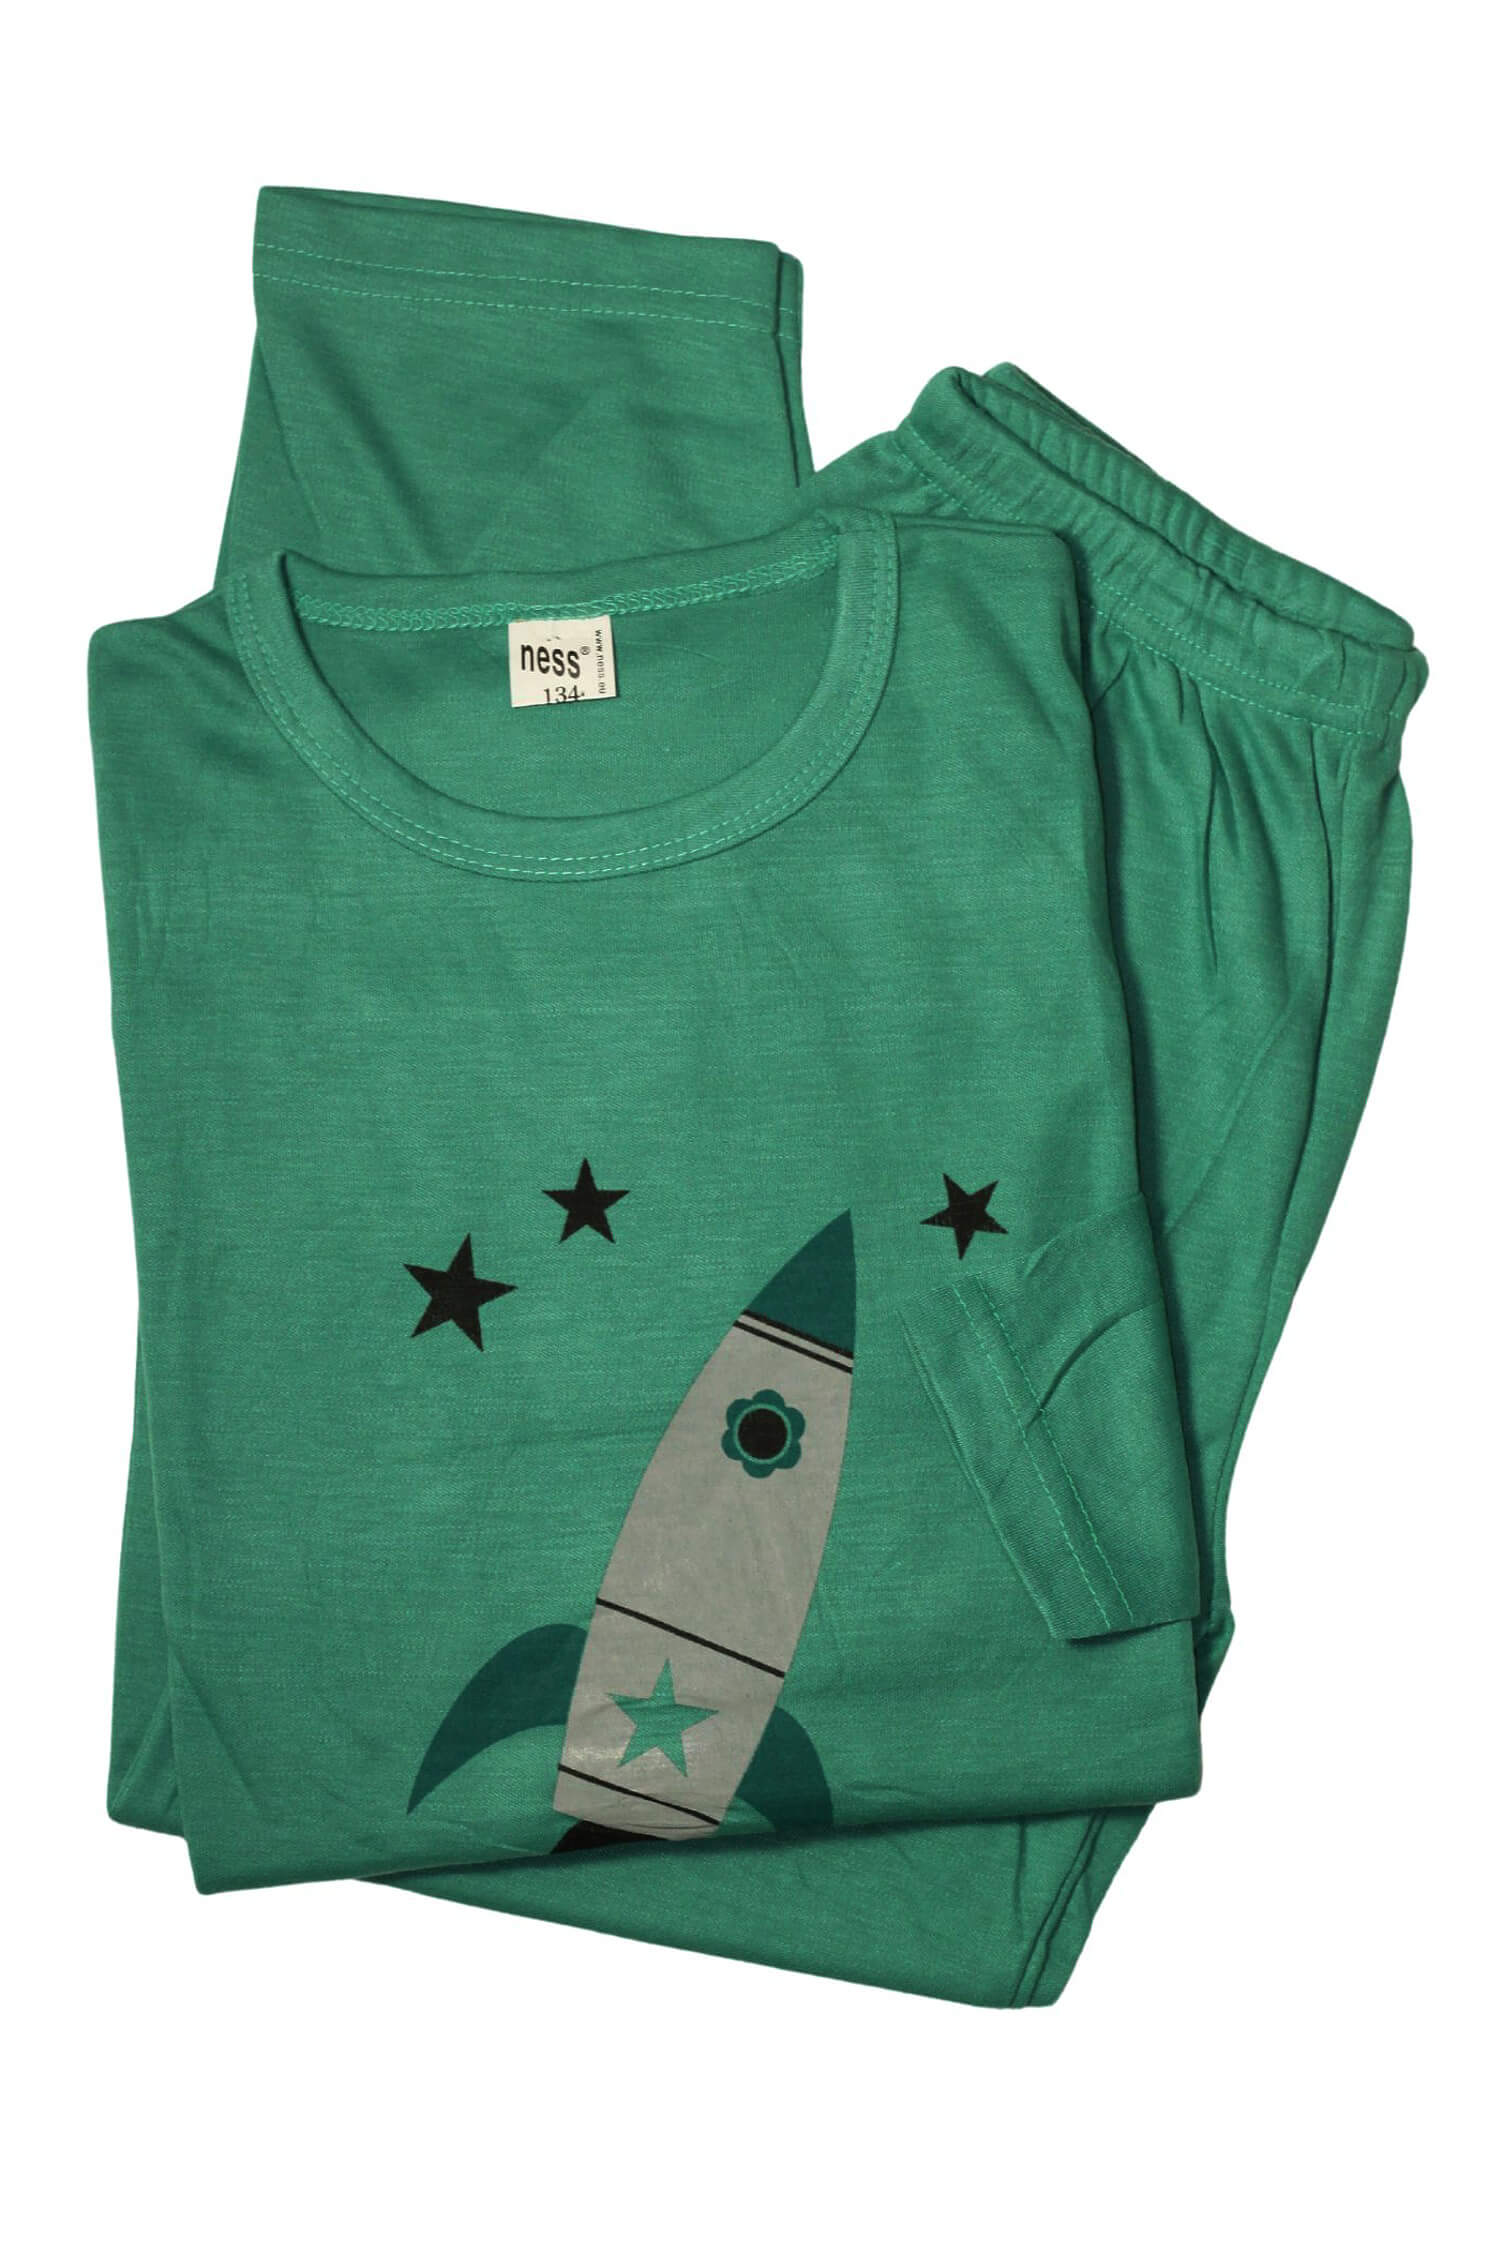 Rocket dětské pyžamo 158 5-6 let tmavě zelená